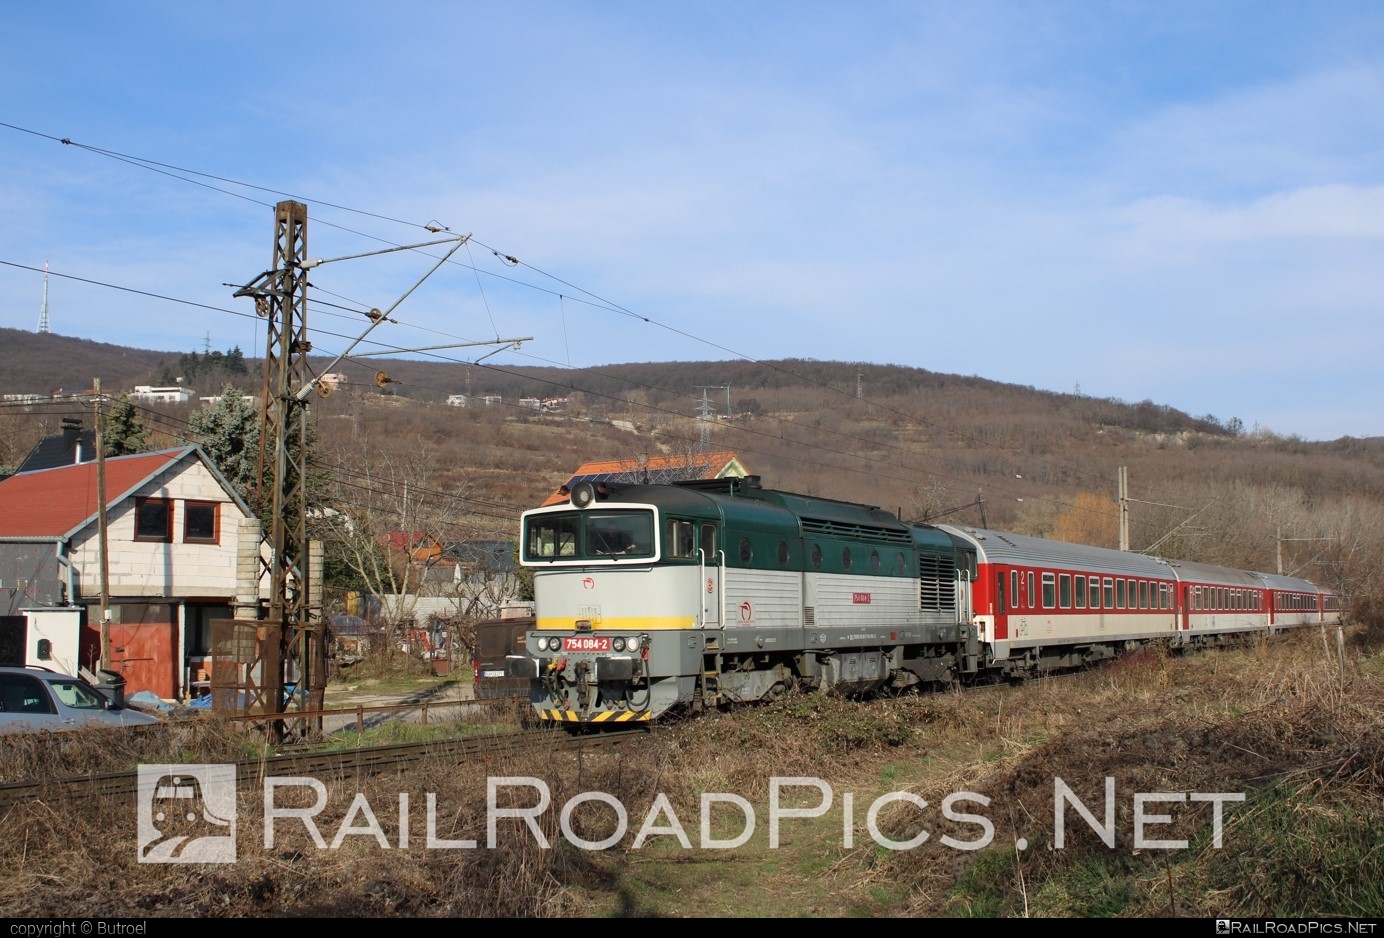 ČKD T 478.4 (754) - 754 084-2 operated by Železničná Spoločnost' Slovensko, a.s. #ZeleznicnaSpolocnostSlovensko #brejlovec #ckd #ckd4784 #ckd754 #ckdt4784 #lokomotiva754 #okuliarnik #zssk